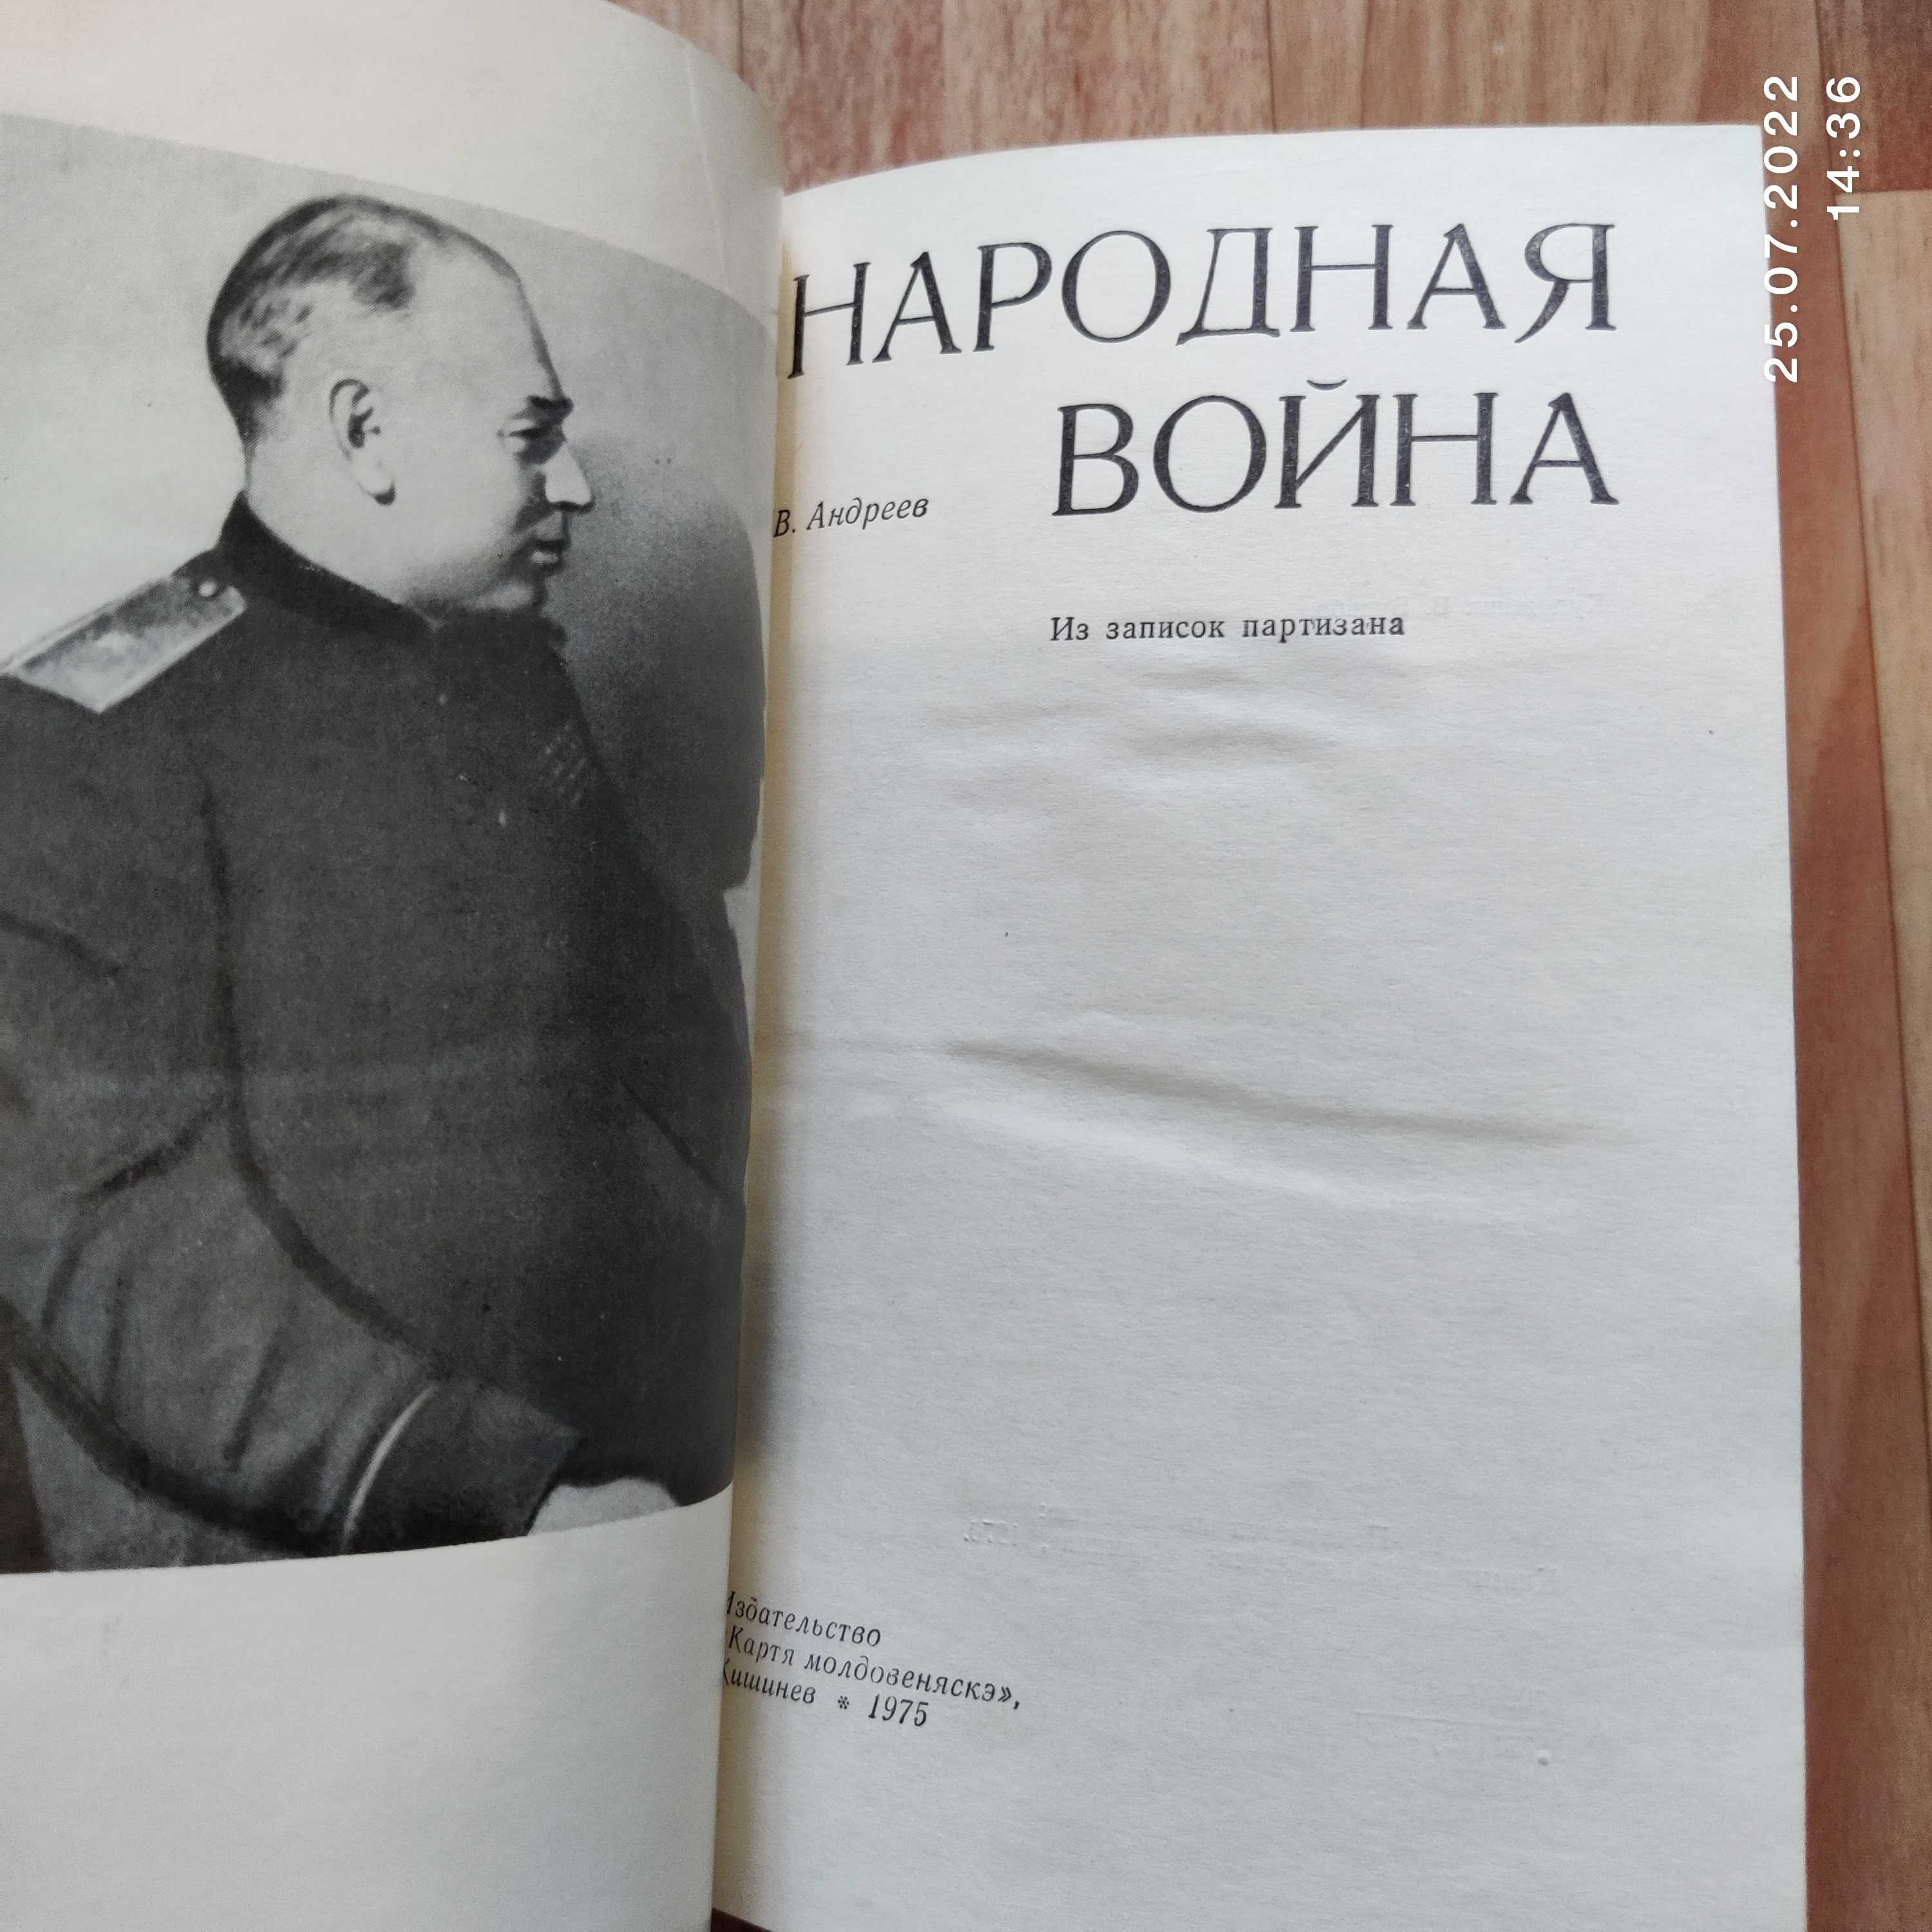 "Народная война" В. Андреев, записки партизана